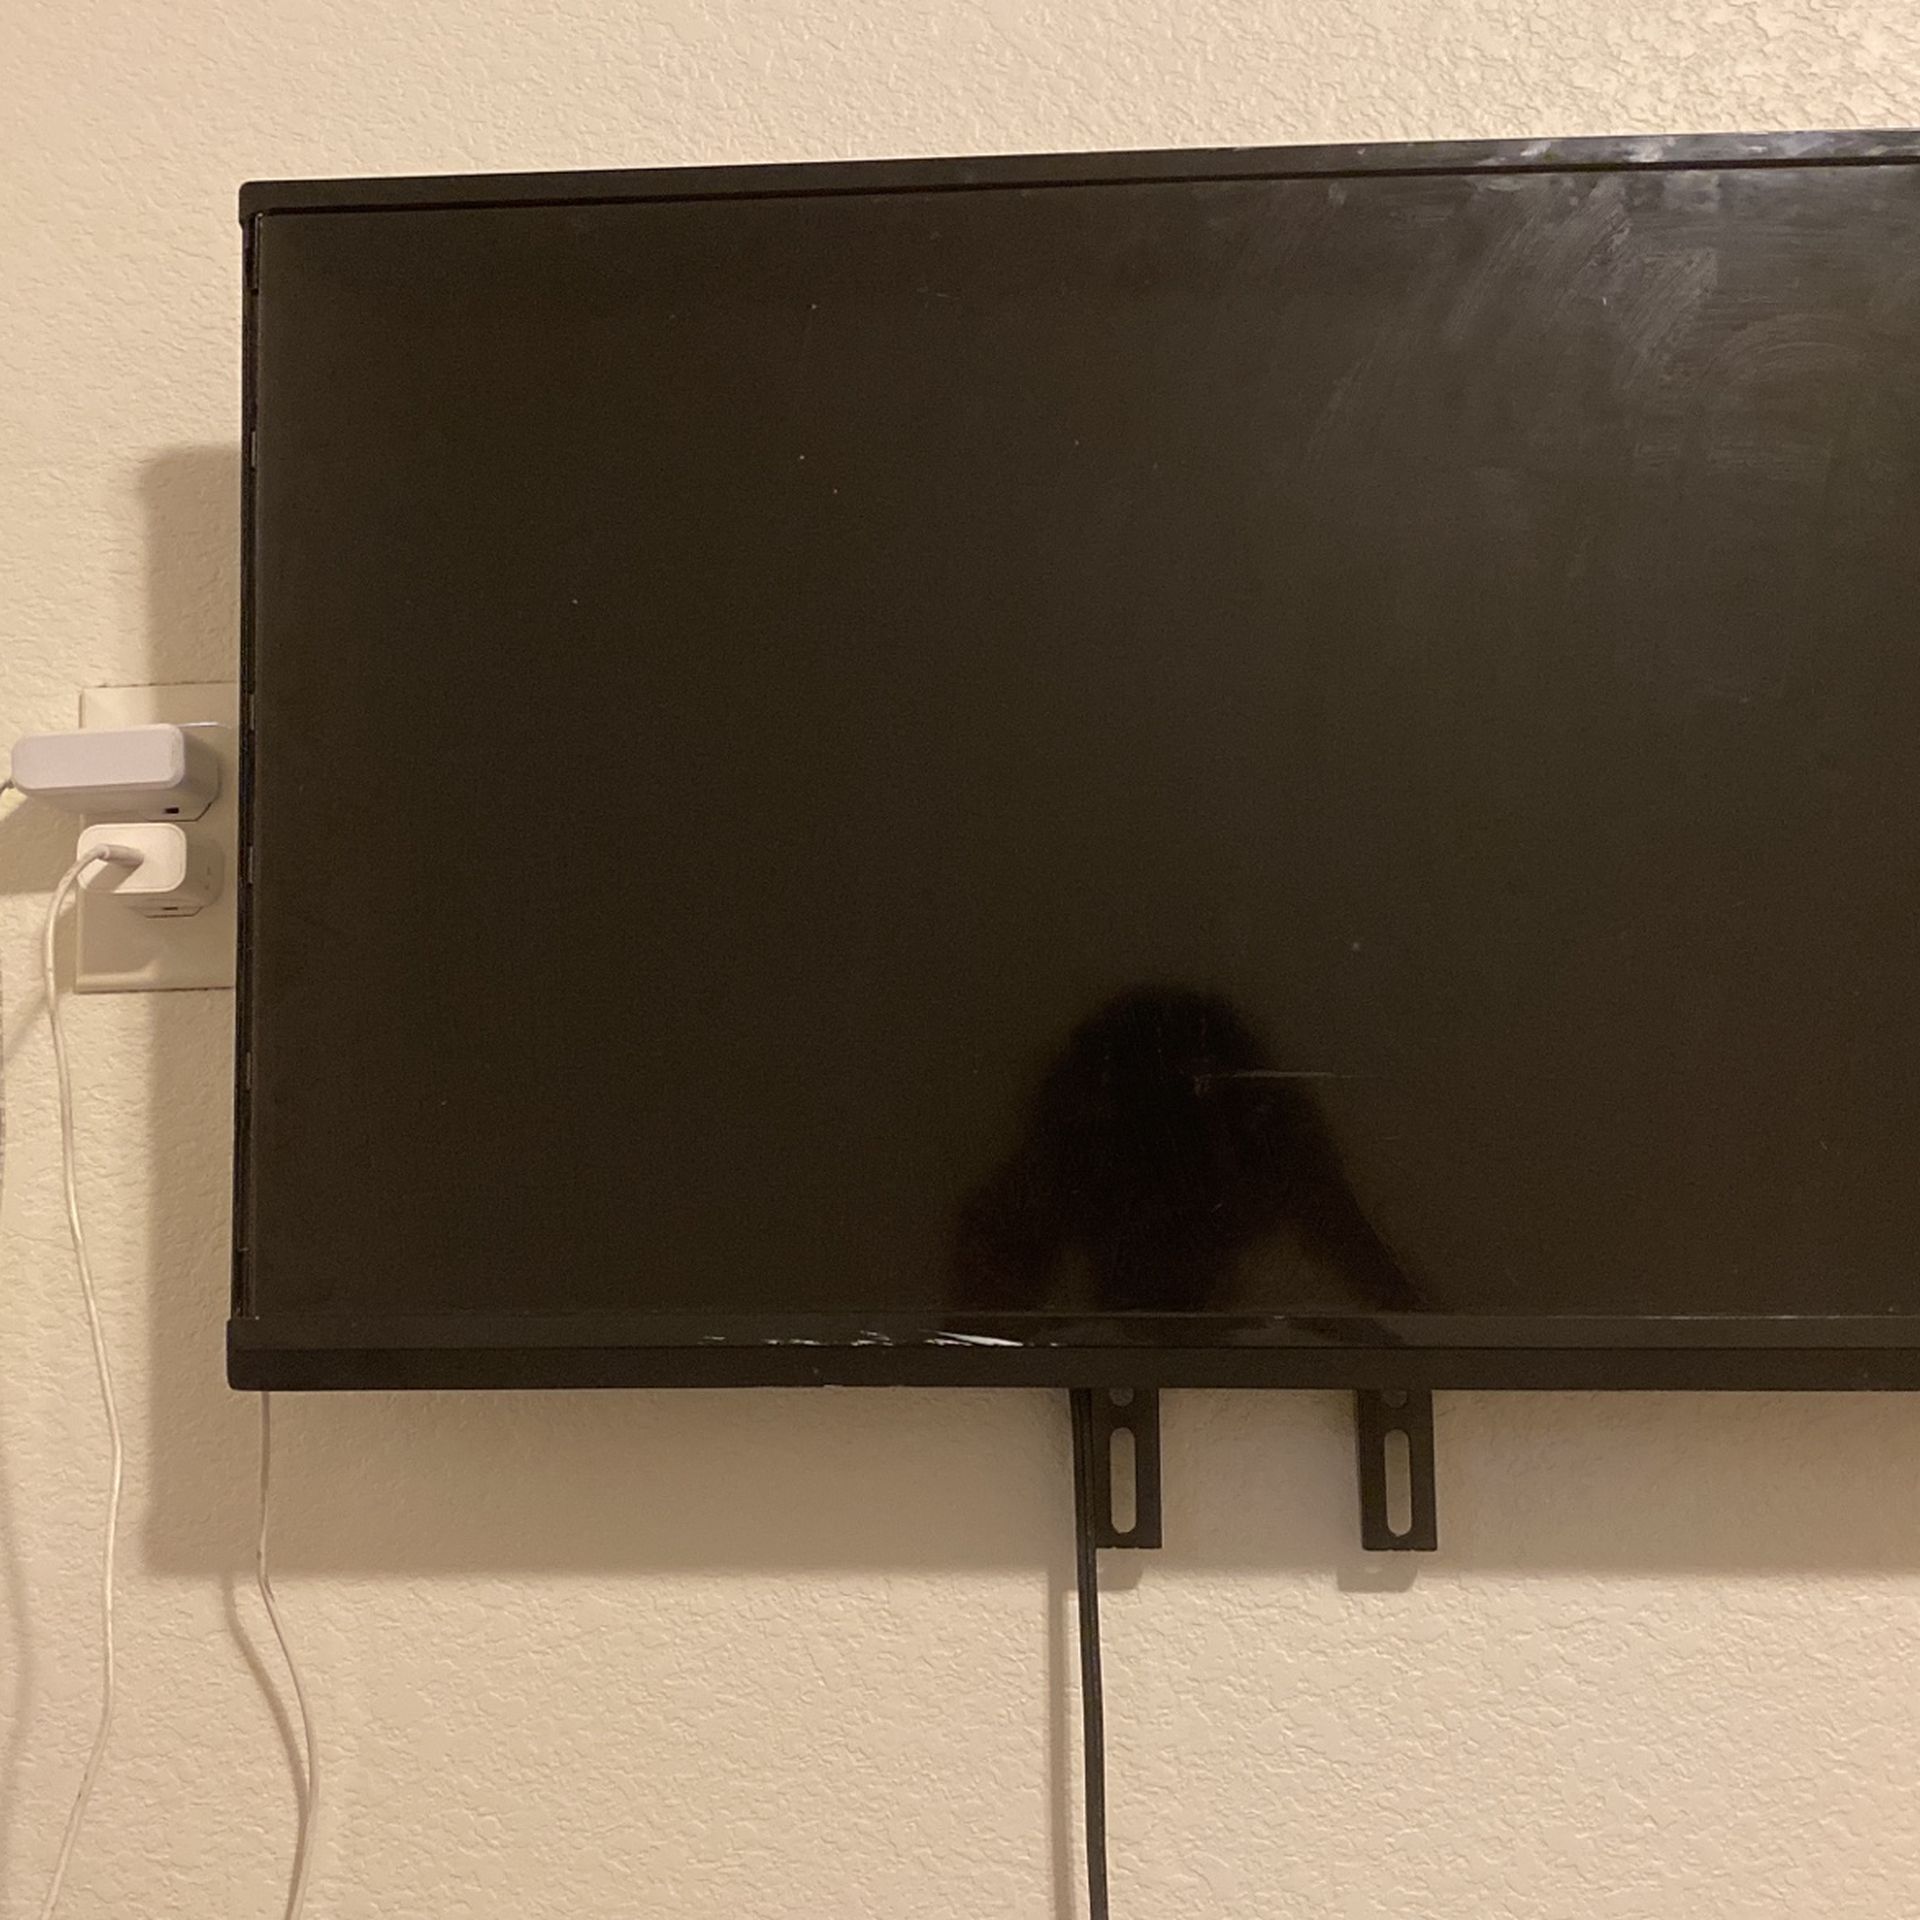 32 inch vizio tv 